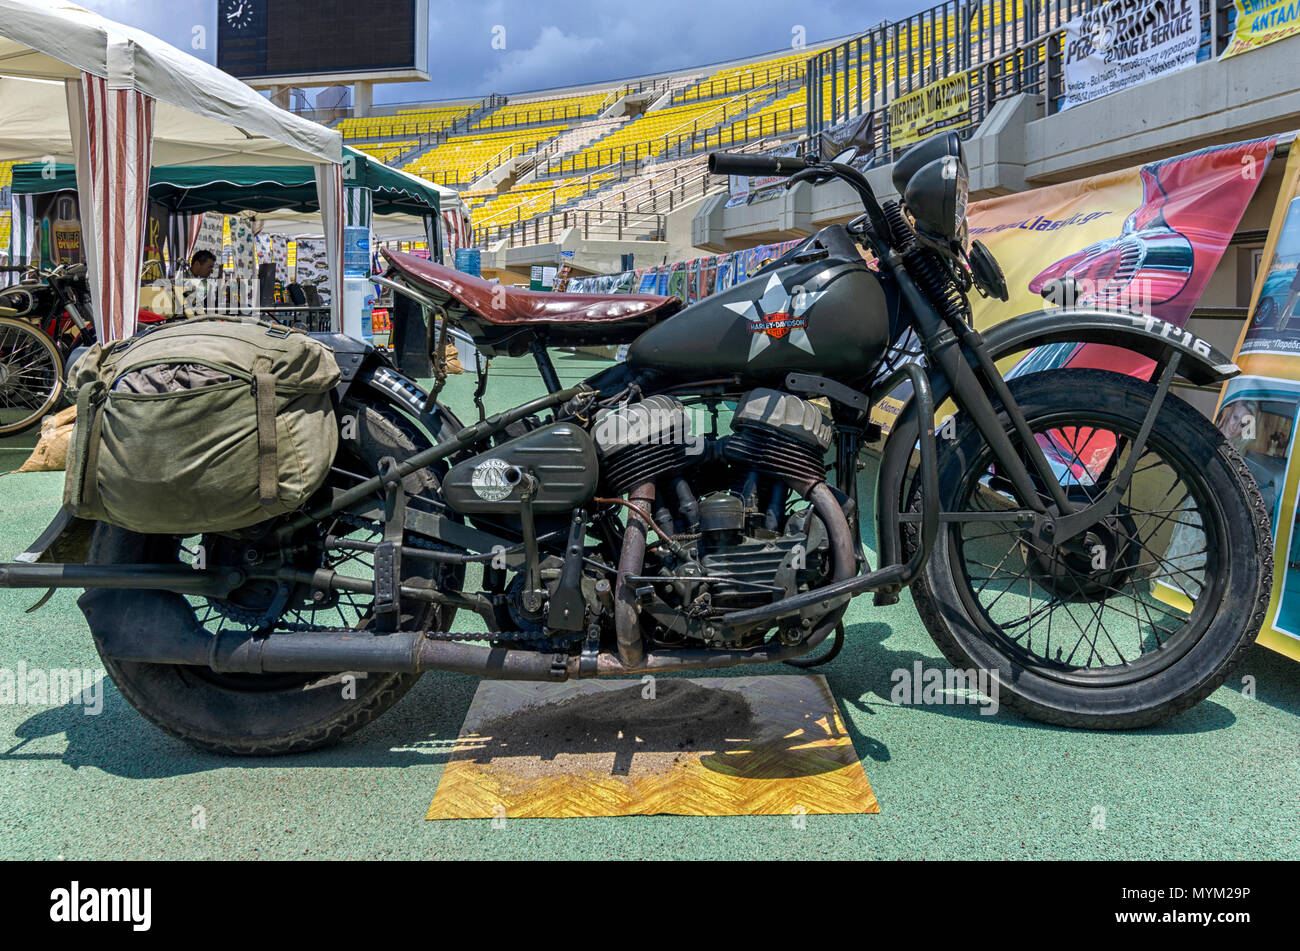 Héraklion, Crète / Grèce - Juillet 6, 2013 : Ancien style militaire au cours d'une Harley Davidson véhicules vintage spectacle au stade Pankritio. Banque D'Images